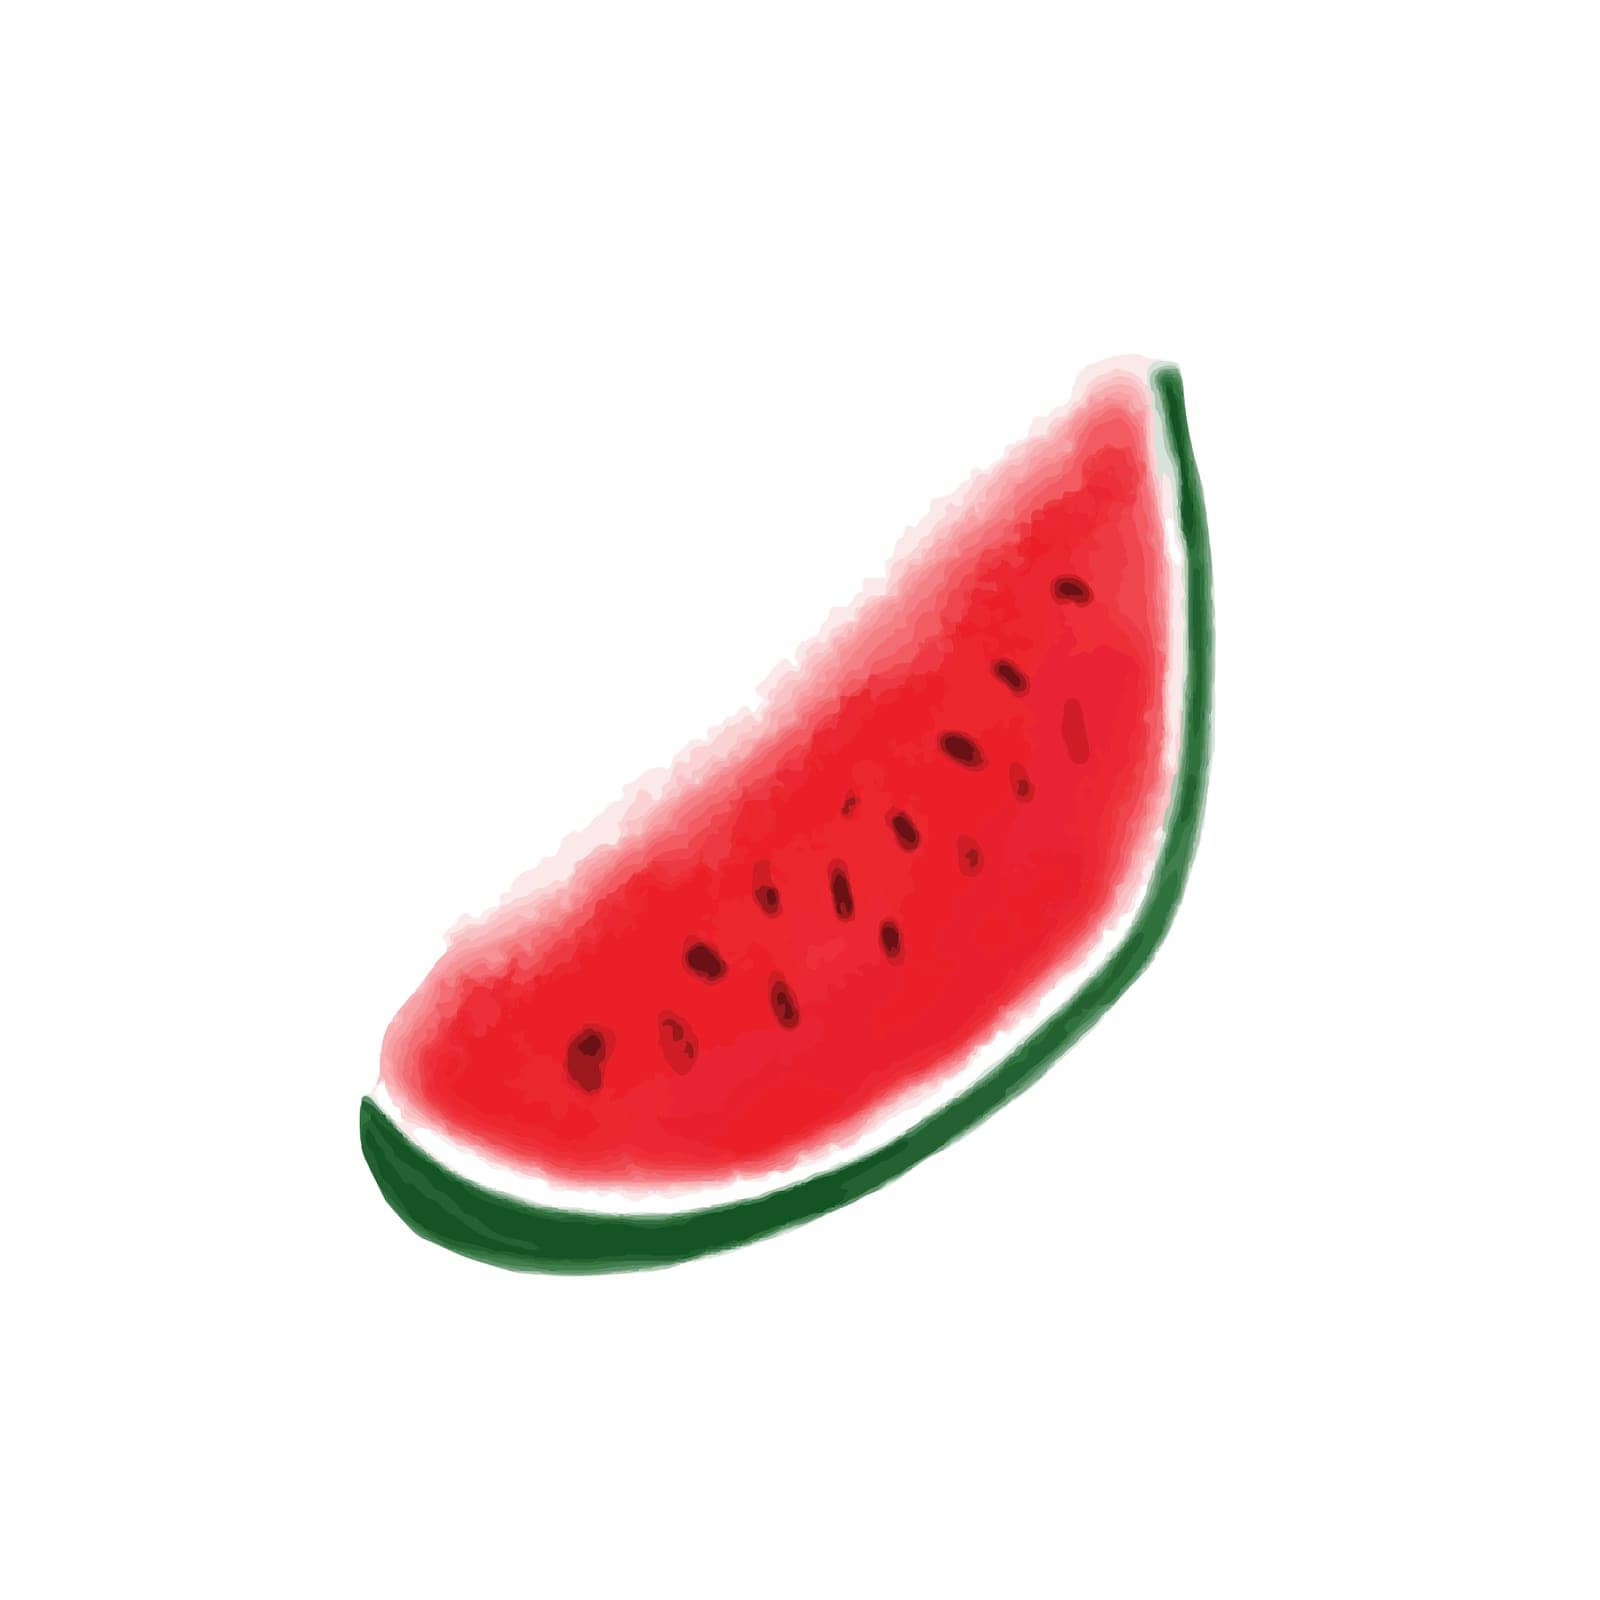 Watermelon clip art by MintanArt